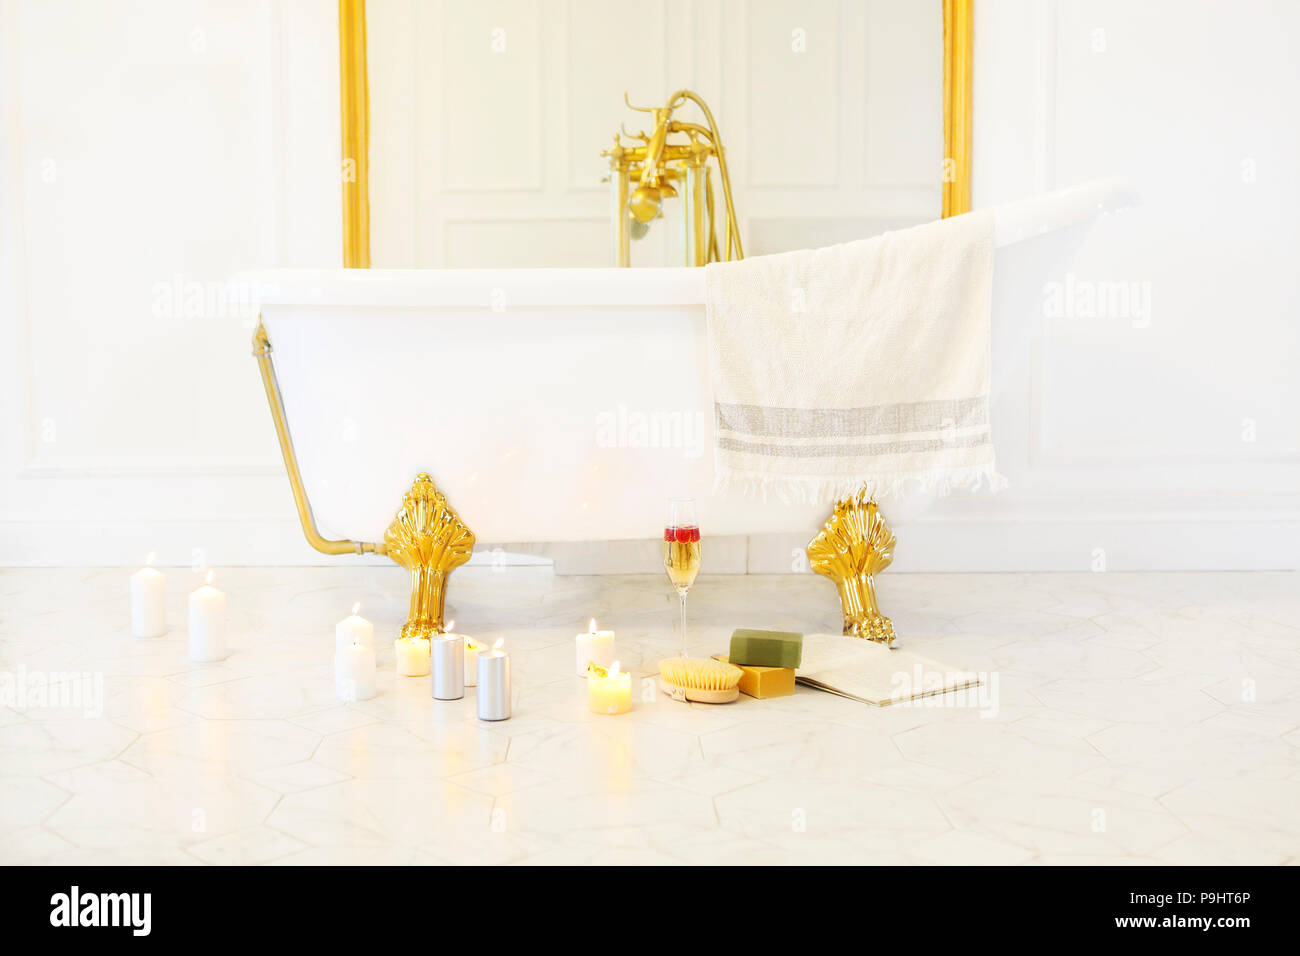 Badezimmer mit Kerzen, einem Buch, einem Glas Champagner in der Badewanne  auf der gefliesten Marmorboden Stockfotografie - Alamy